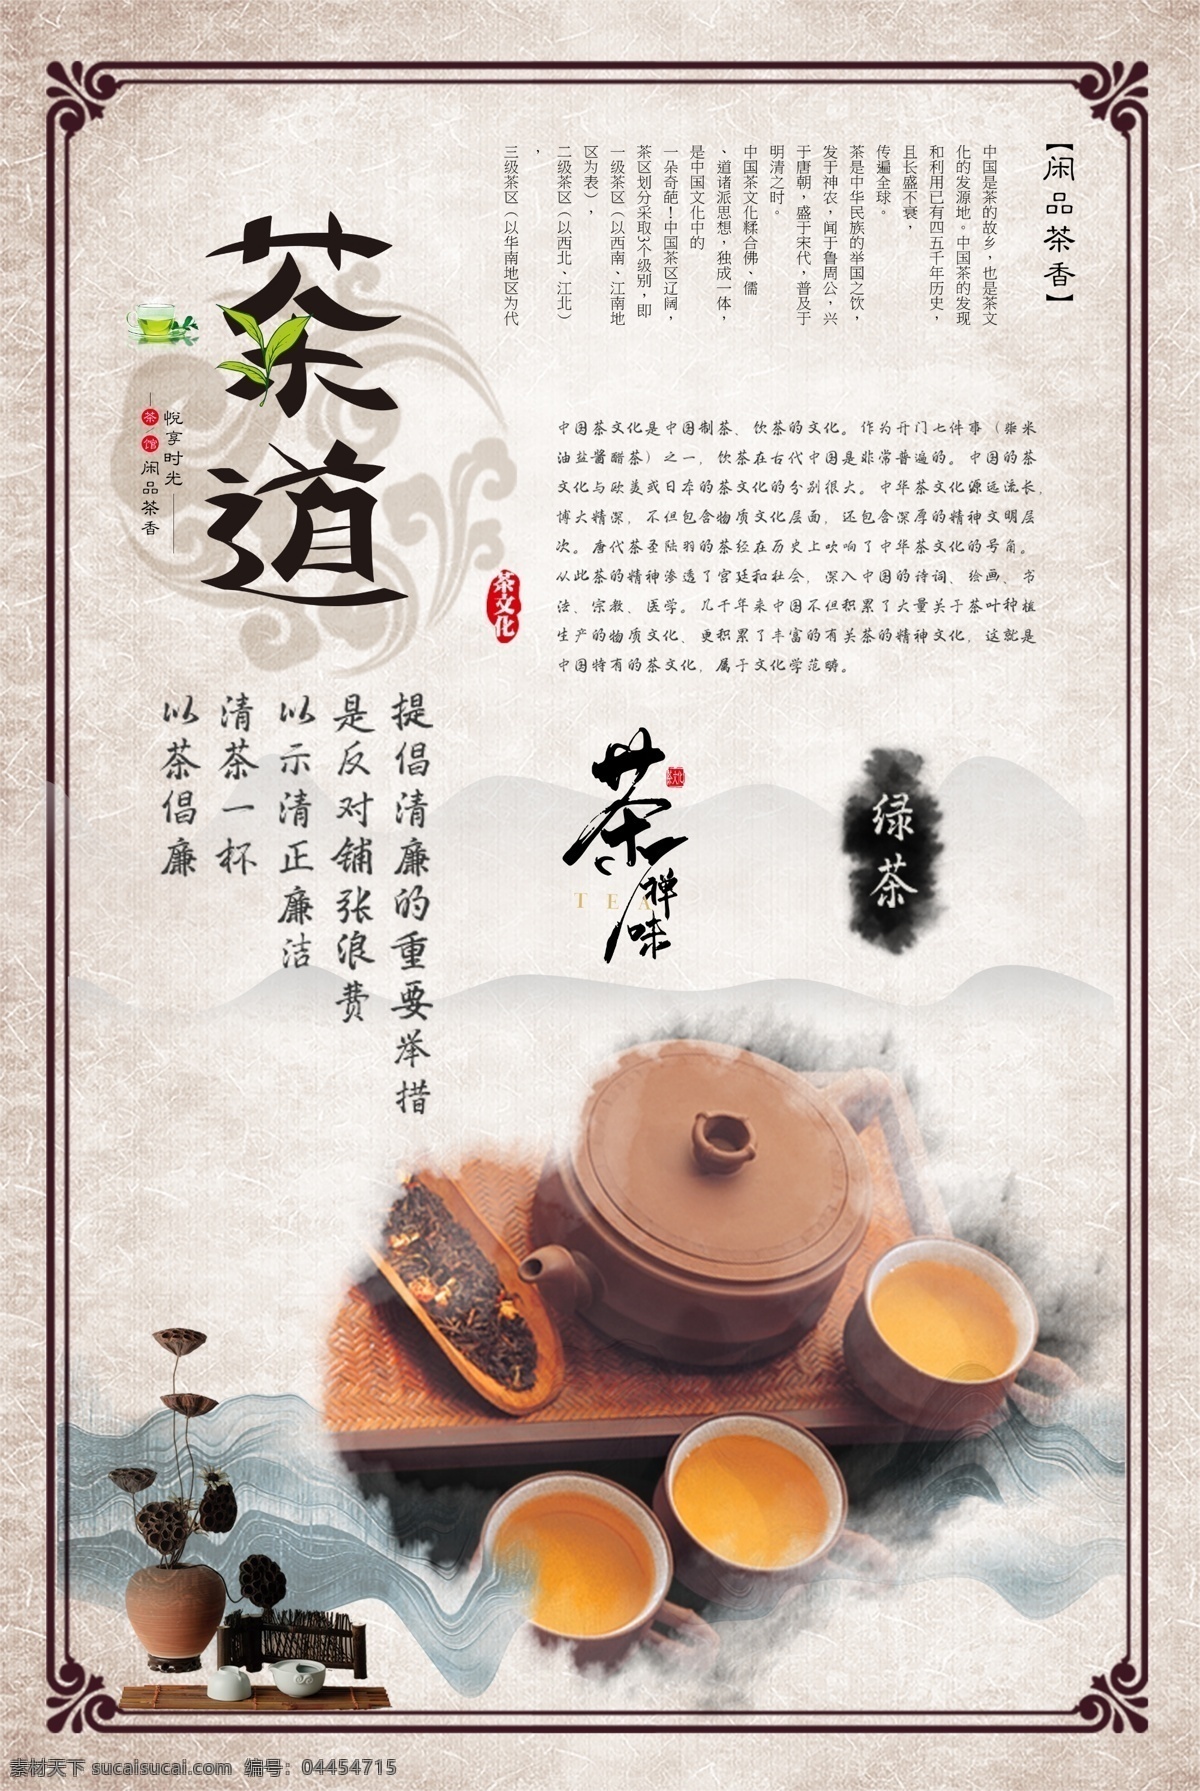 茶道 文化 精细 分层 系列 展板 茶道文化 茶文化 中国文化 传统文化 茶禅一味 茶文化展板 茶 绿茶 白茶 黑茶 黄茶 人生如茶 茶道人生